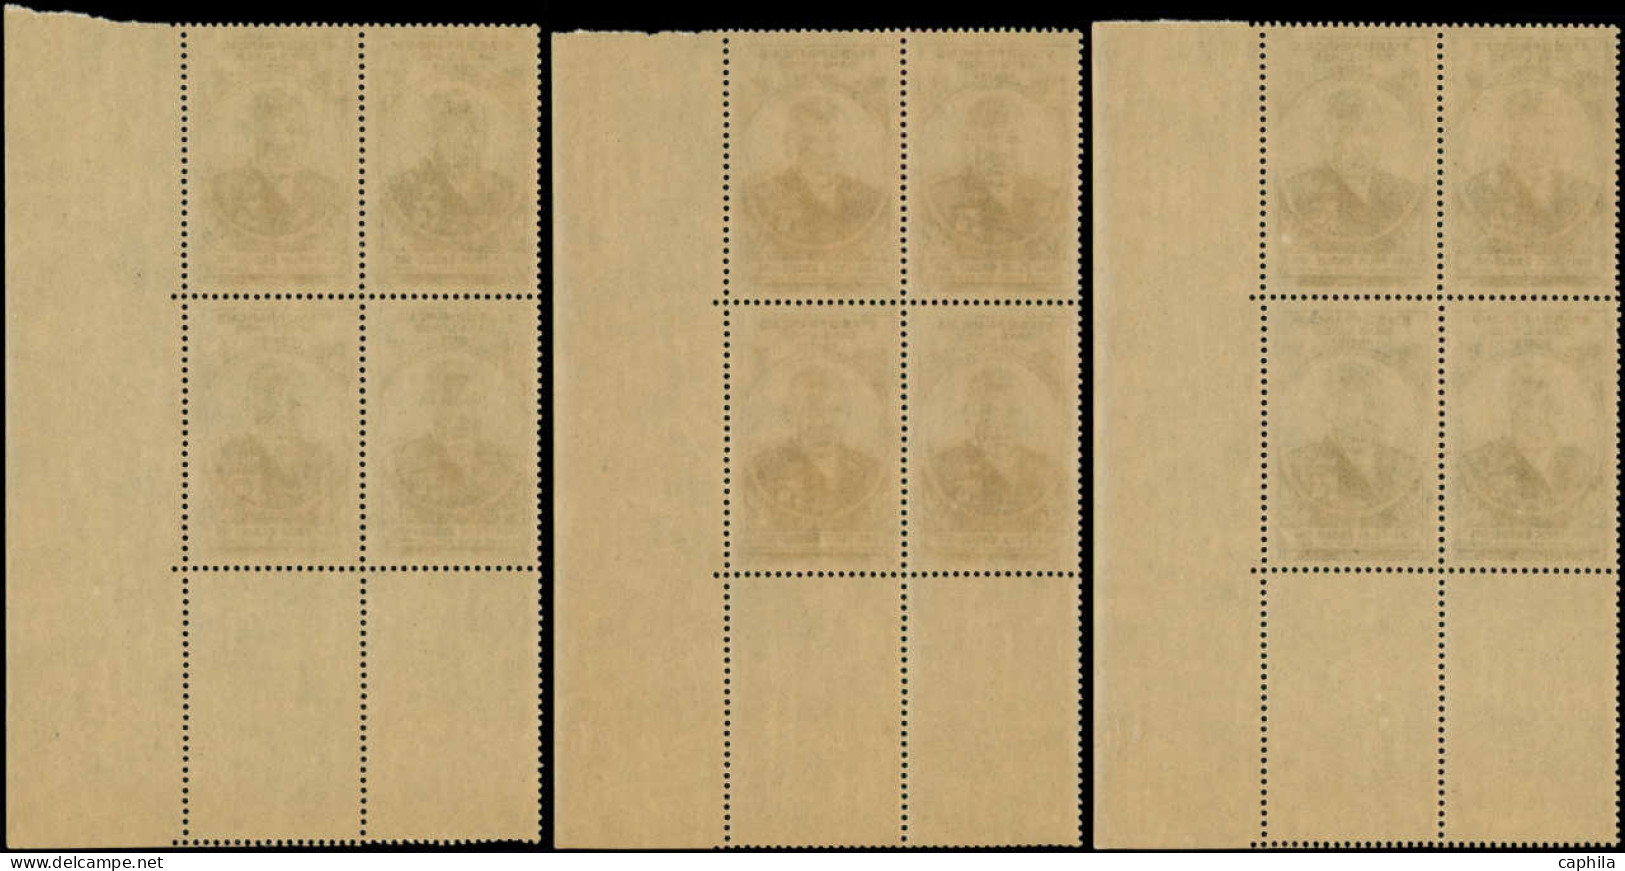 ** INDE FRANCAISE - Poste - Ensemble de 17 blocs de 4 coins datés dont multiples, 1936/52